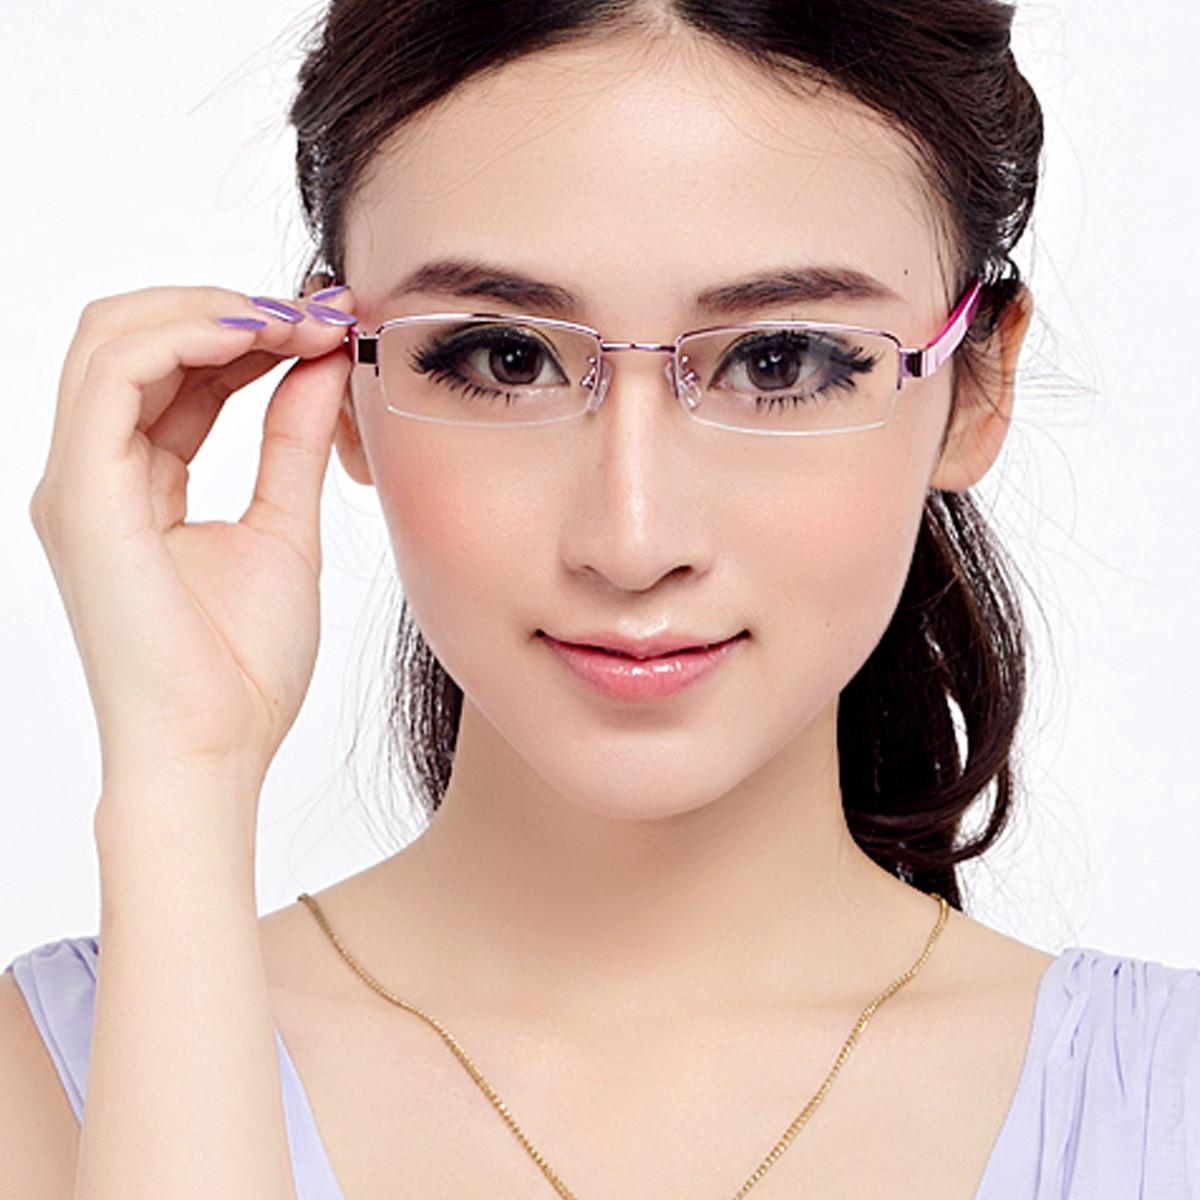 近视眼镜对于高度近视引起的合并症,如视网膜脱落,玻璃体混浊,白内障